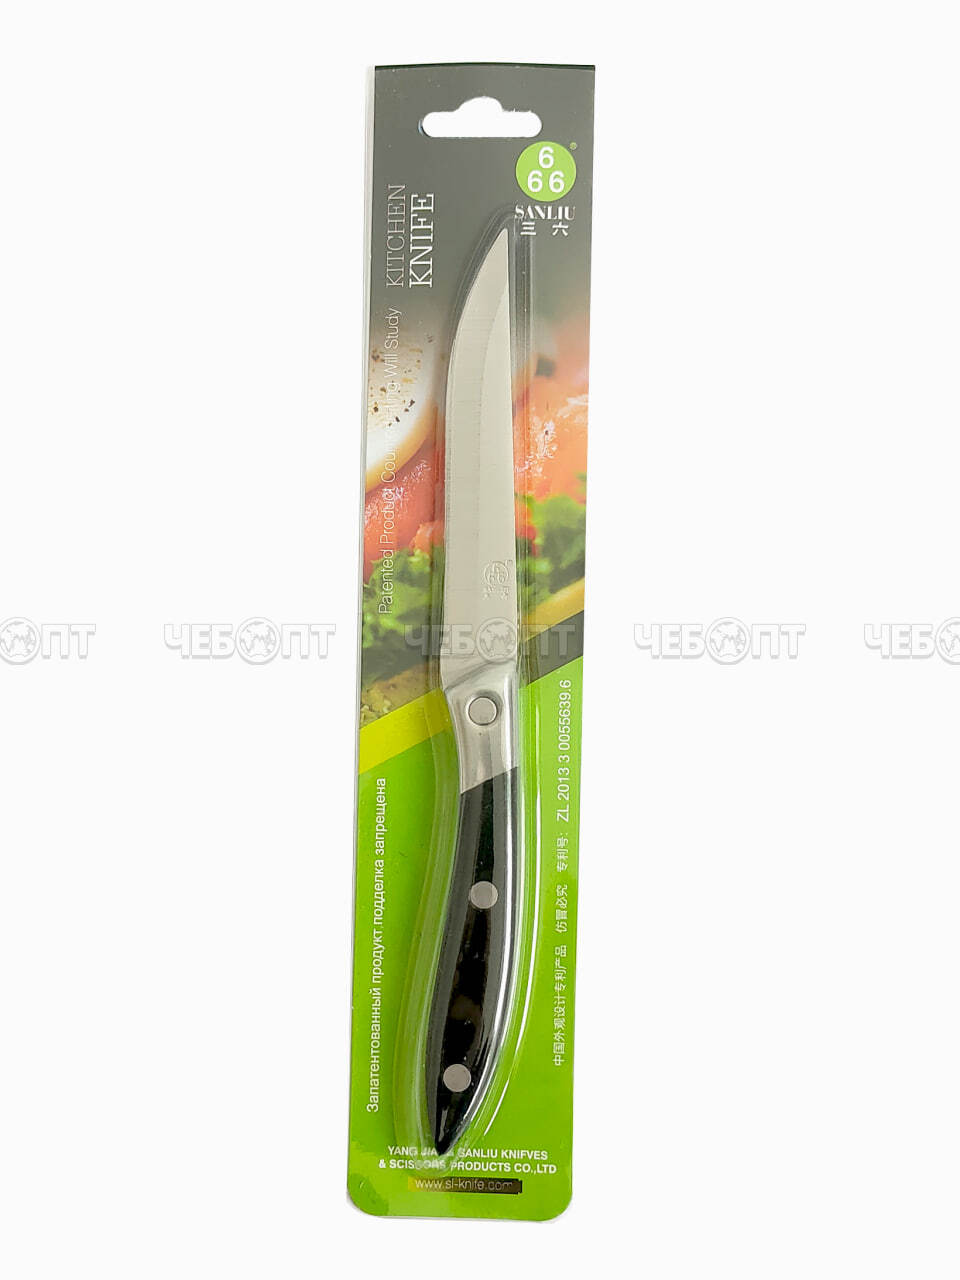 Нож кухонный универсальный 10 см Sanliu 666 из нержавеющей стали с пластиковой ручкой арт. 26002 $ [250] GOODSEE. ЧЕБОПТ.